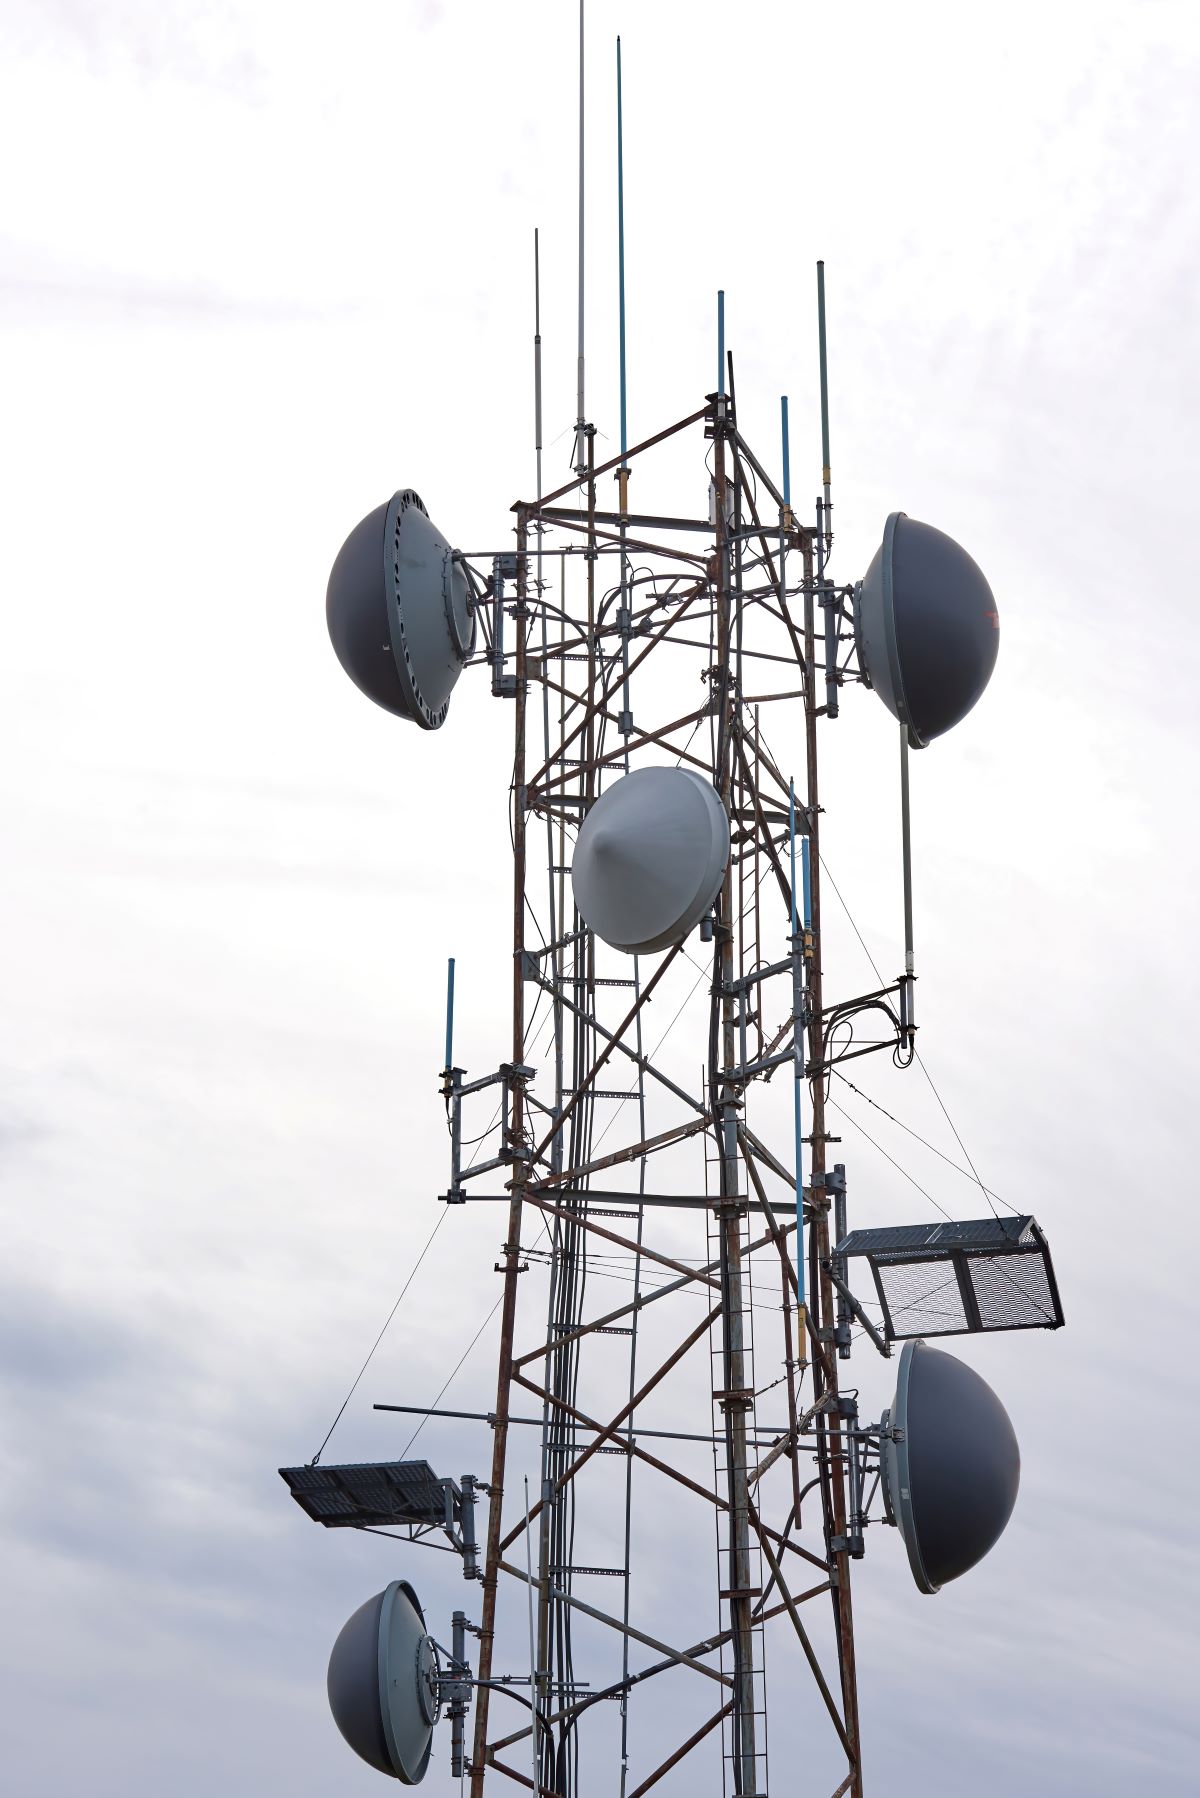 ETB ha optado por la modalidad SaaS (Software as a Service) al seleccionar a JSC Ingenium, compañía de ingeniería de Telecomunicaciones especializada en el desarrollo de infraestructura de red para operadores móviles y proveedor de referencia en soluciones cloud-native.